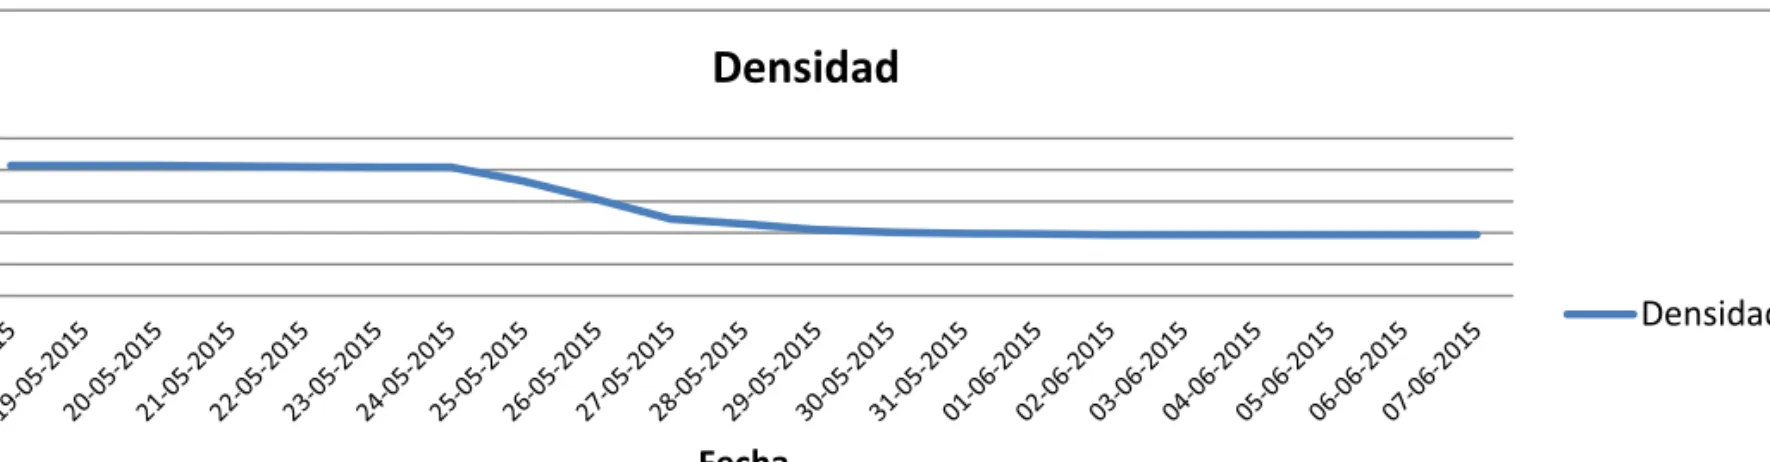 FIGURA 5.5: Gráfico Densidad v/s Fecha (Datos aportados por Viña William Fevre). 